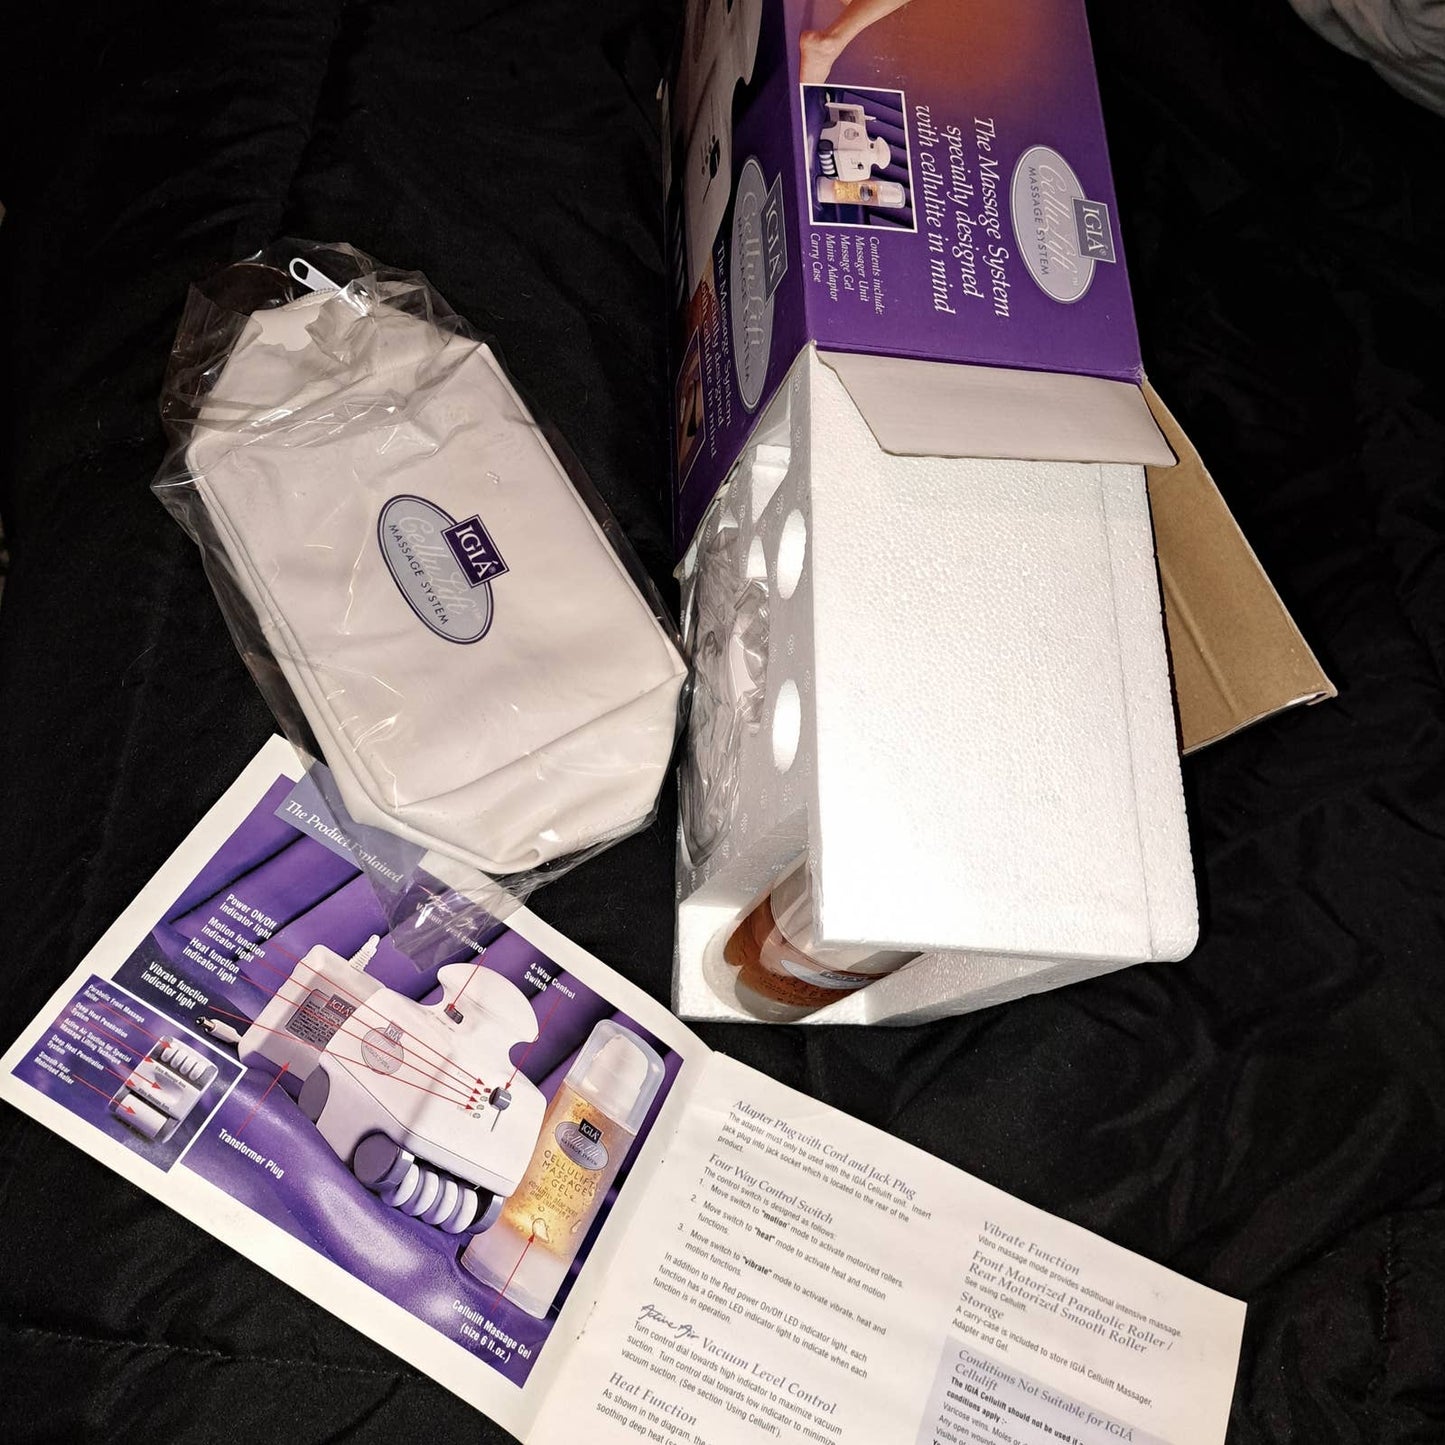 NEW IN BOX - IGIA Cellulift Magic Massage cellulite eraser Machine